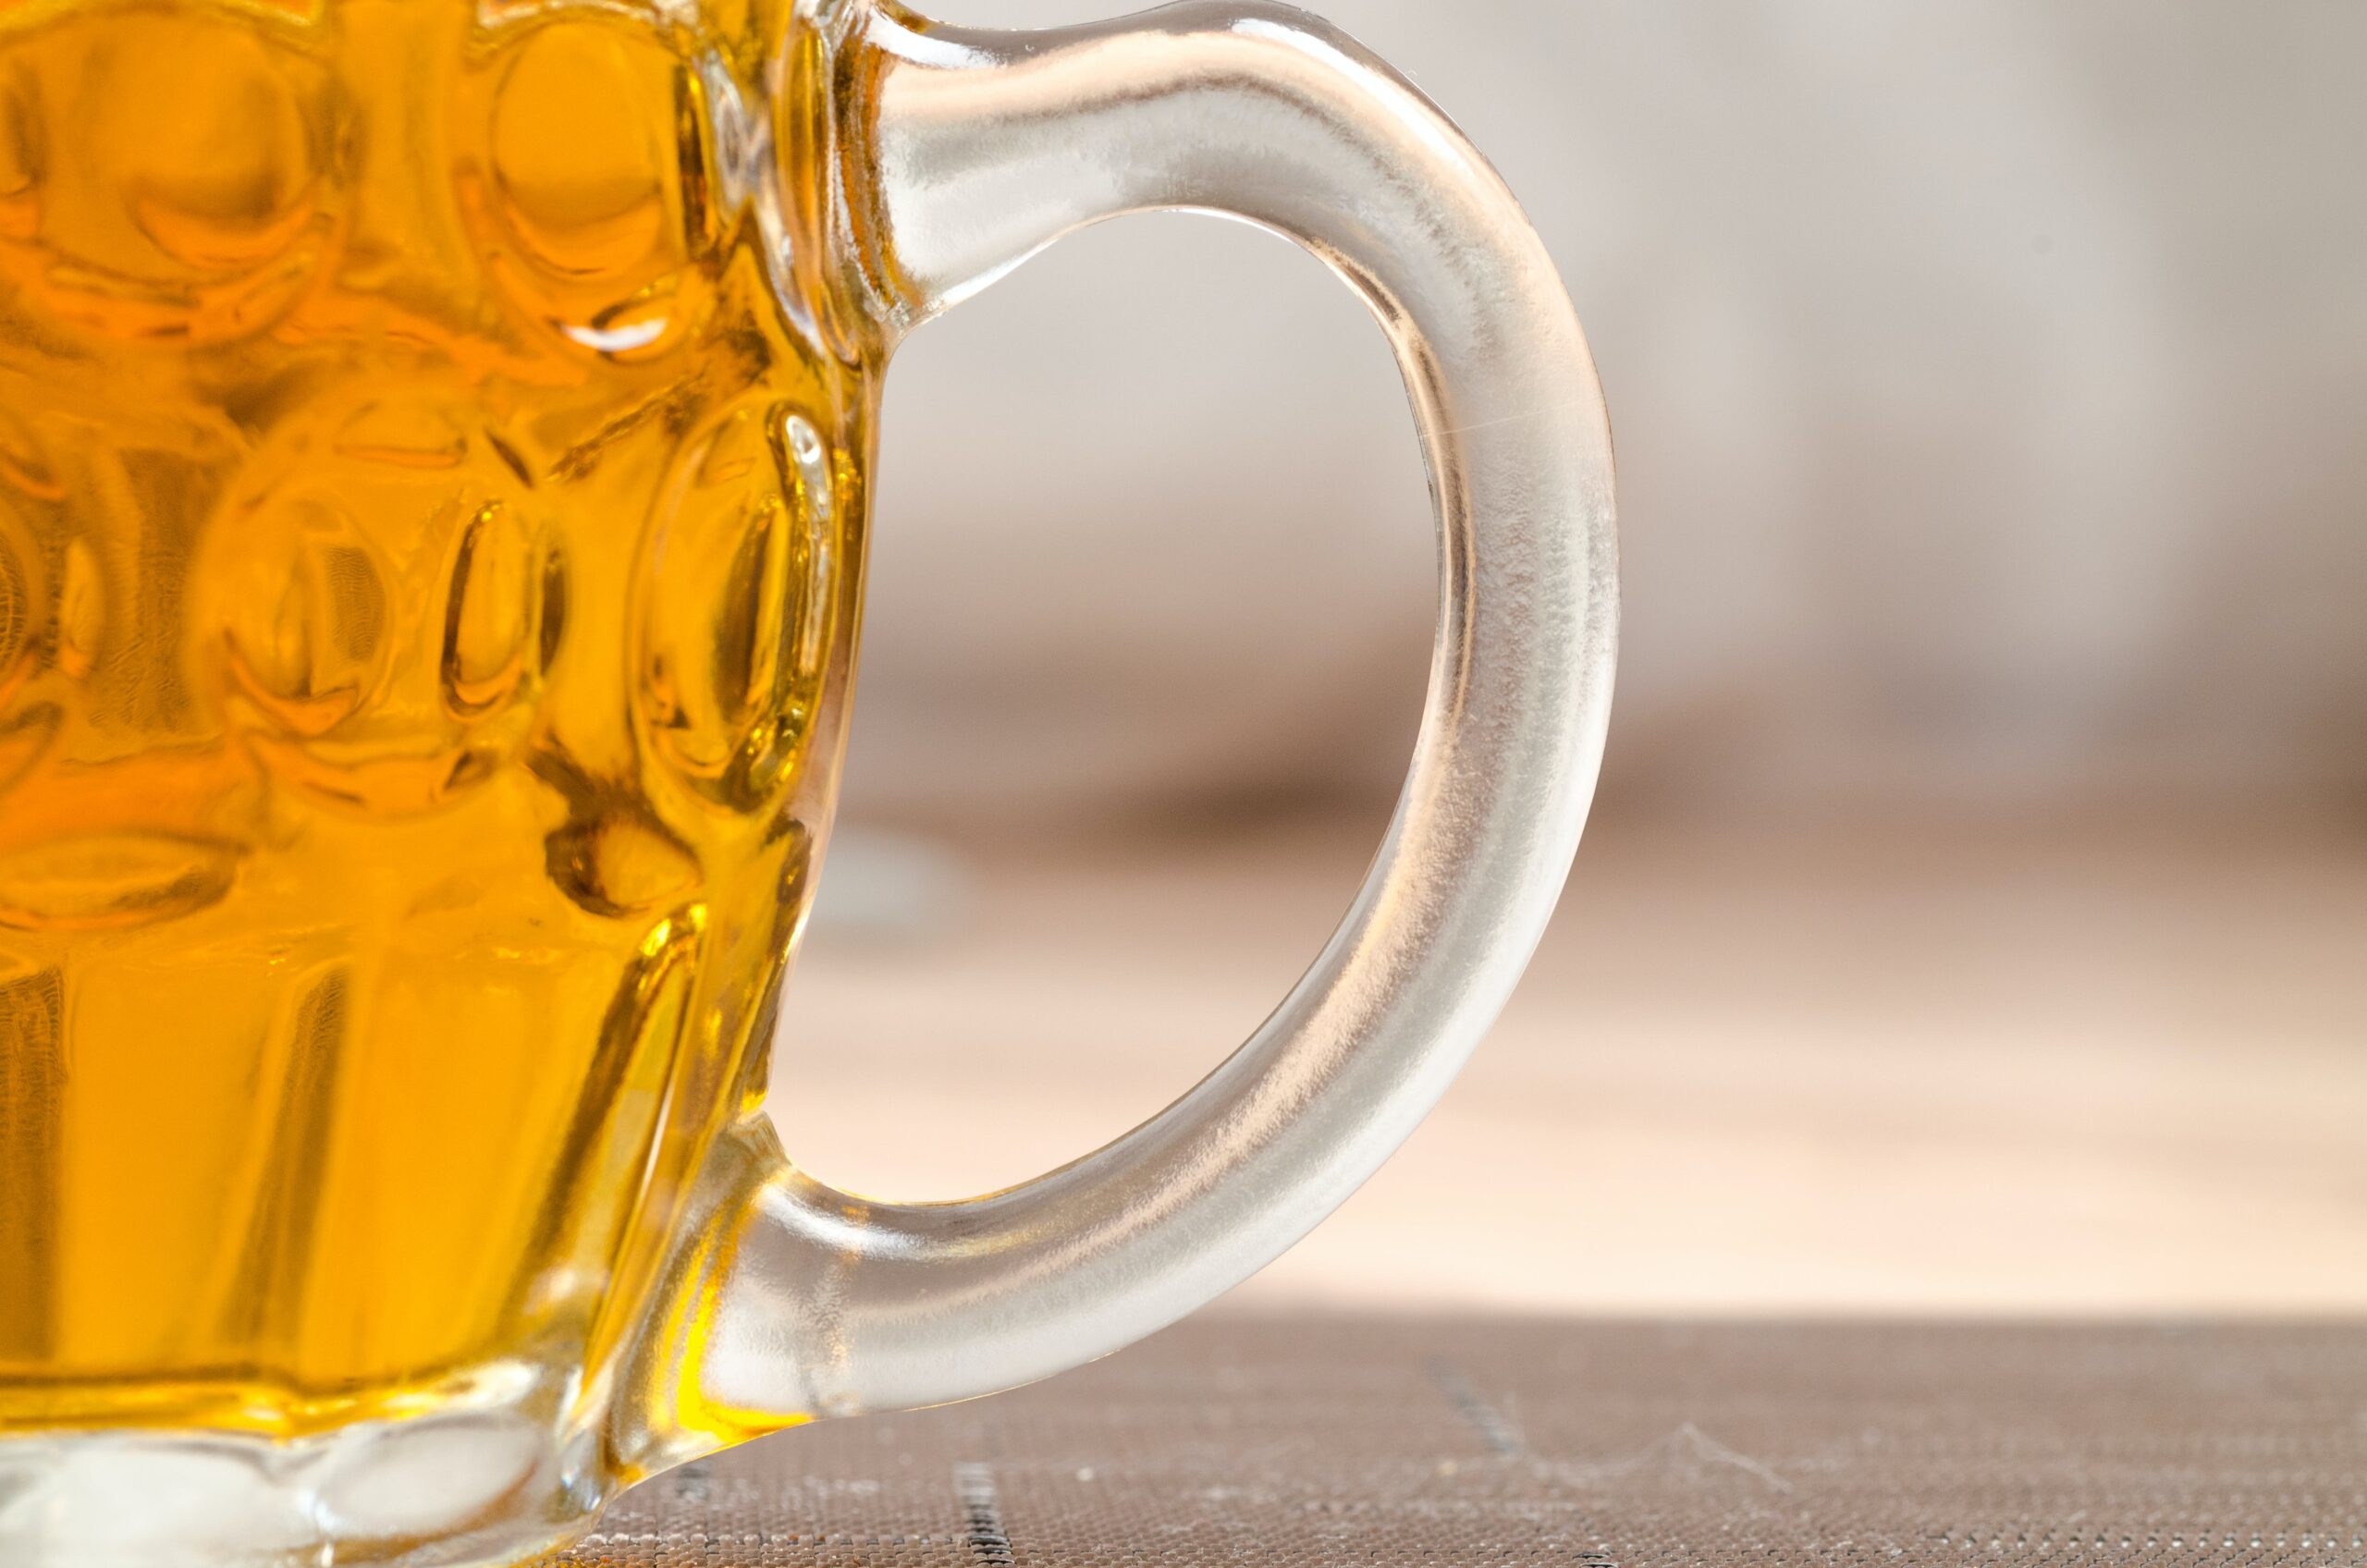 Descubre la mejor cerveza checa en 2021 | Guía experta